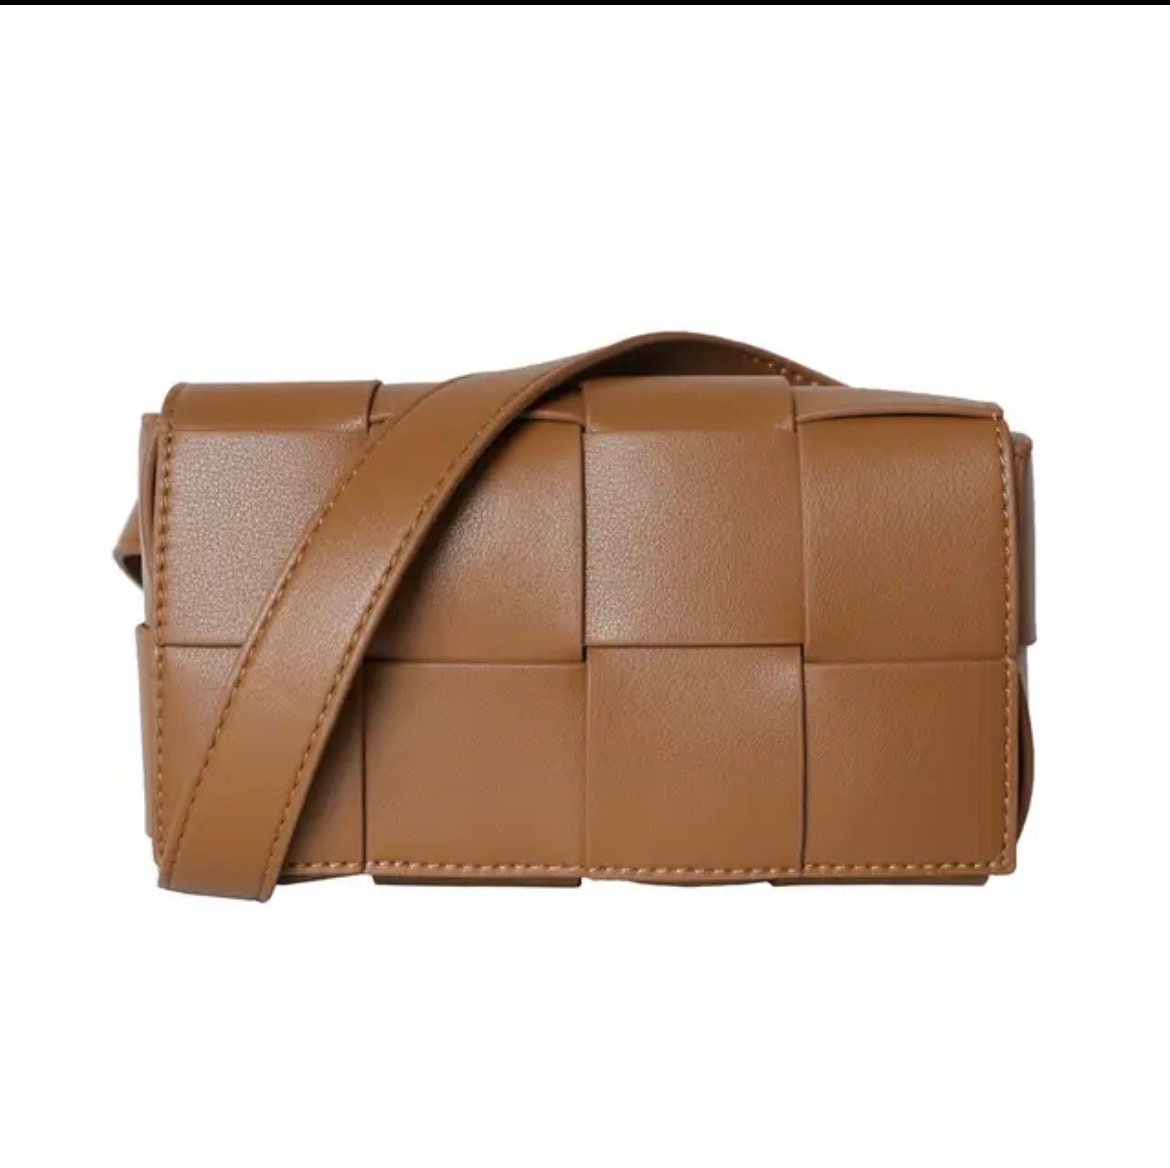 MJ Crocssbody Shoulder Bag Dupe Leather Small Bag Shoulder Bags Designer  Luxury Dupe - Wishupon